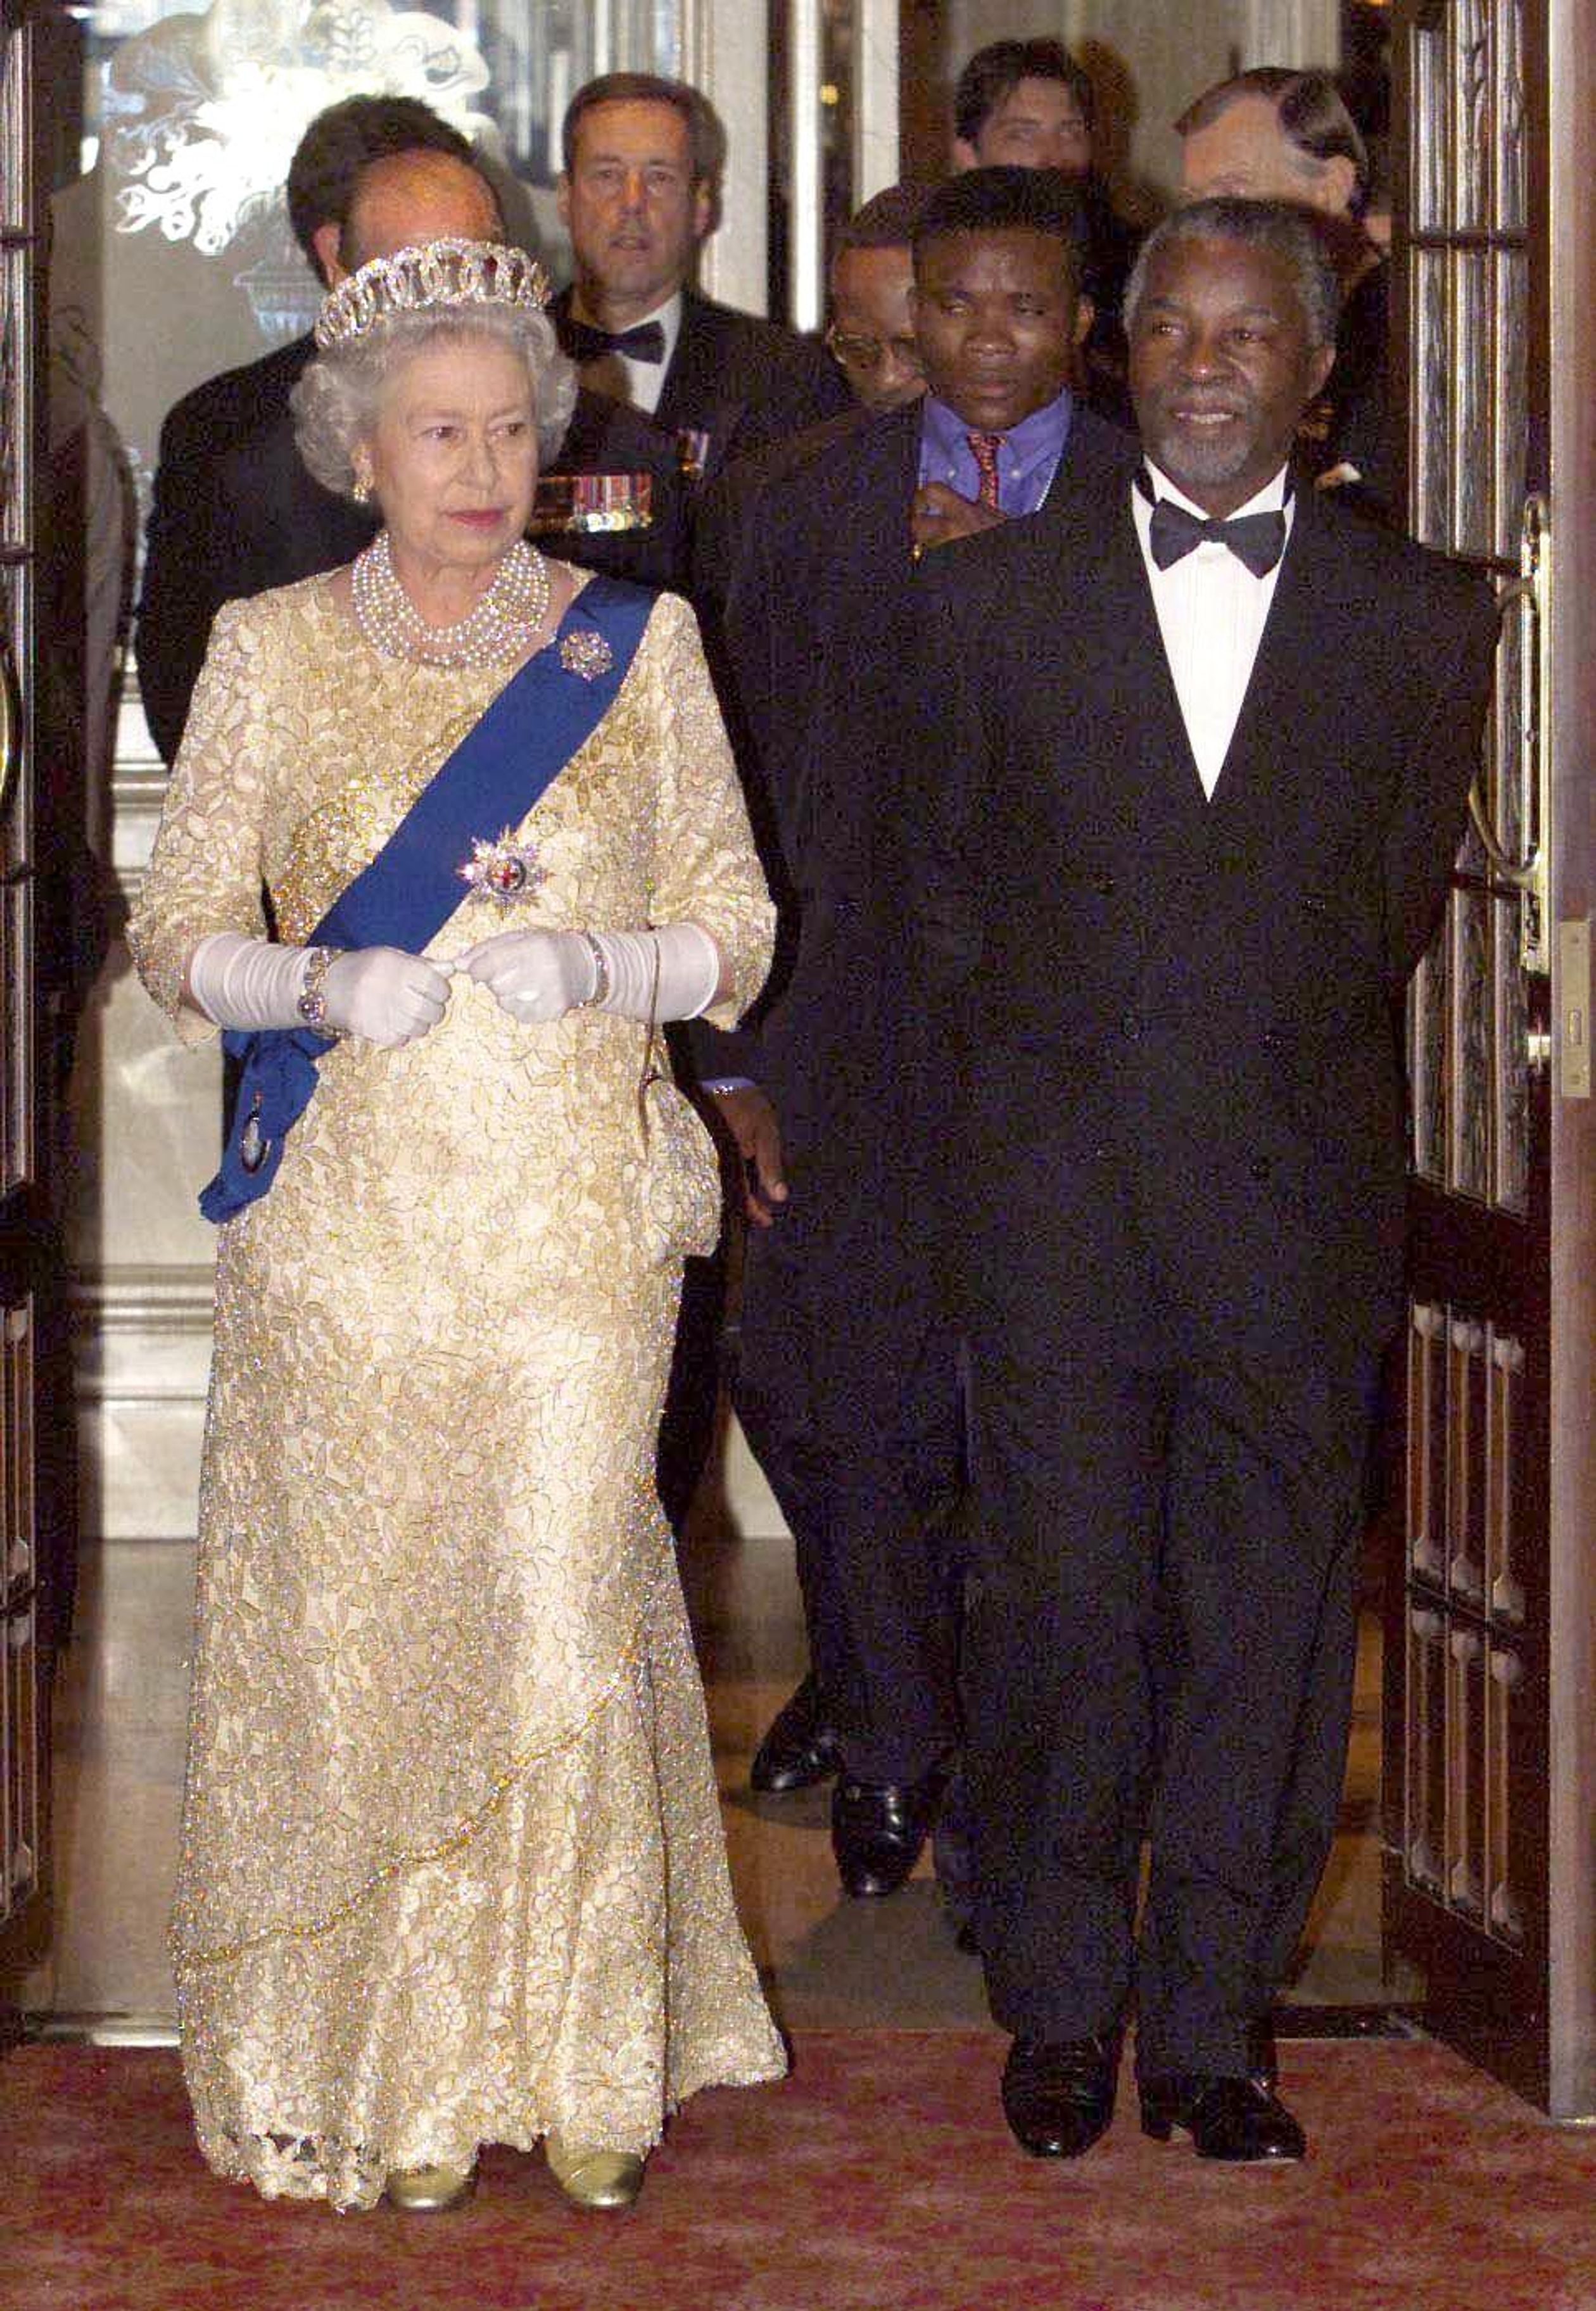 1999: Koningin Elizabeth draagt een gouden jurk voor het staatsbanket in Durban, met de